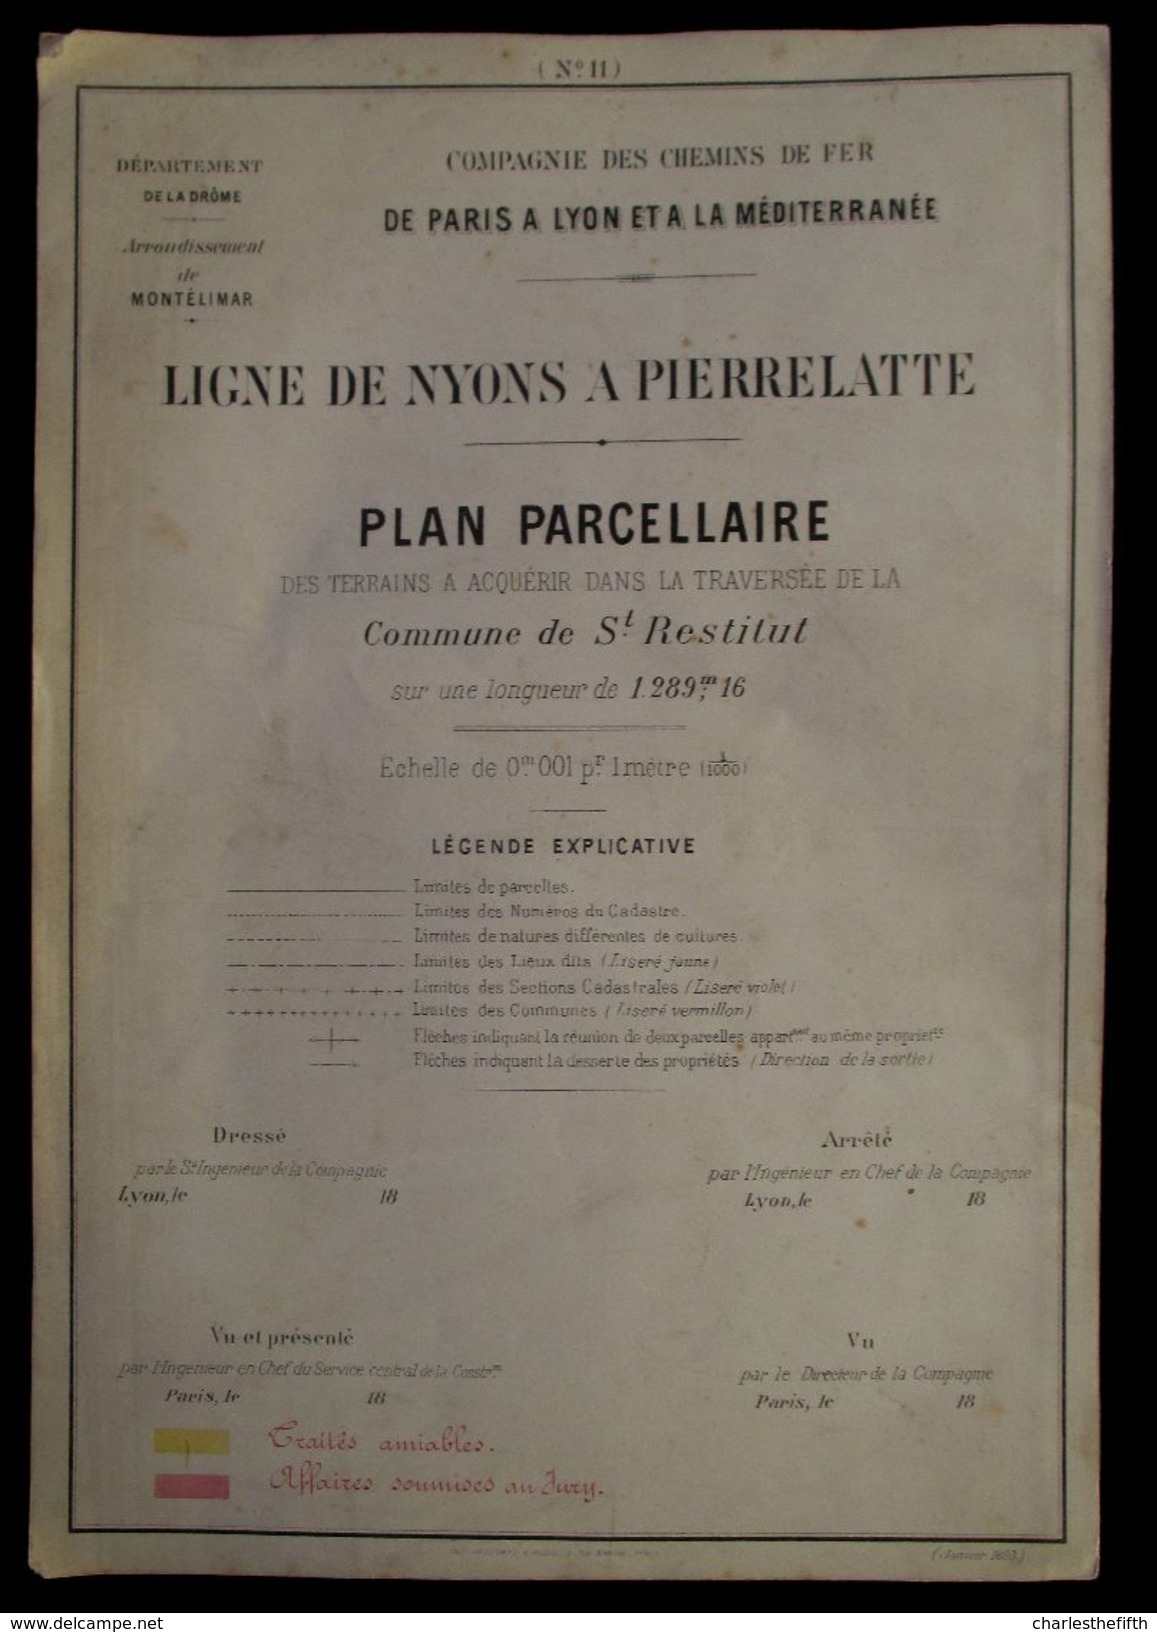 1897 PLAN PARCELLAIRE  CHEMIN DE FER > PARIS A LYON > MEDITERRANEE  COMMUNE DE St - RESTITUT ( St - Paul 3 Chateaux ) - Historische Dokumente